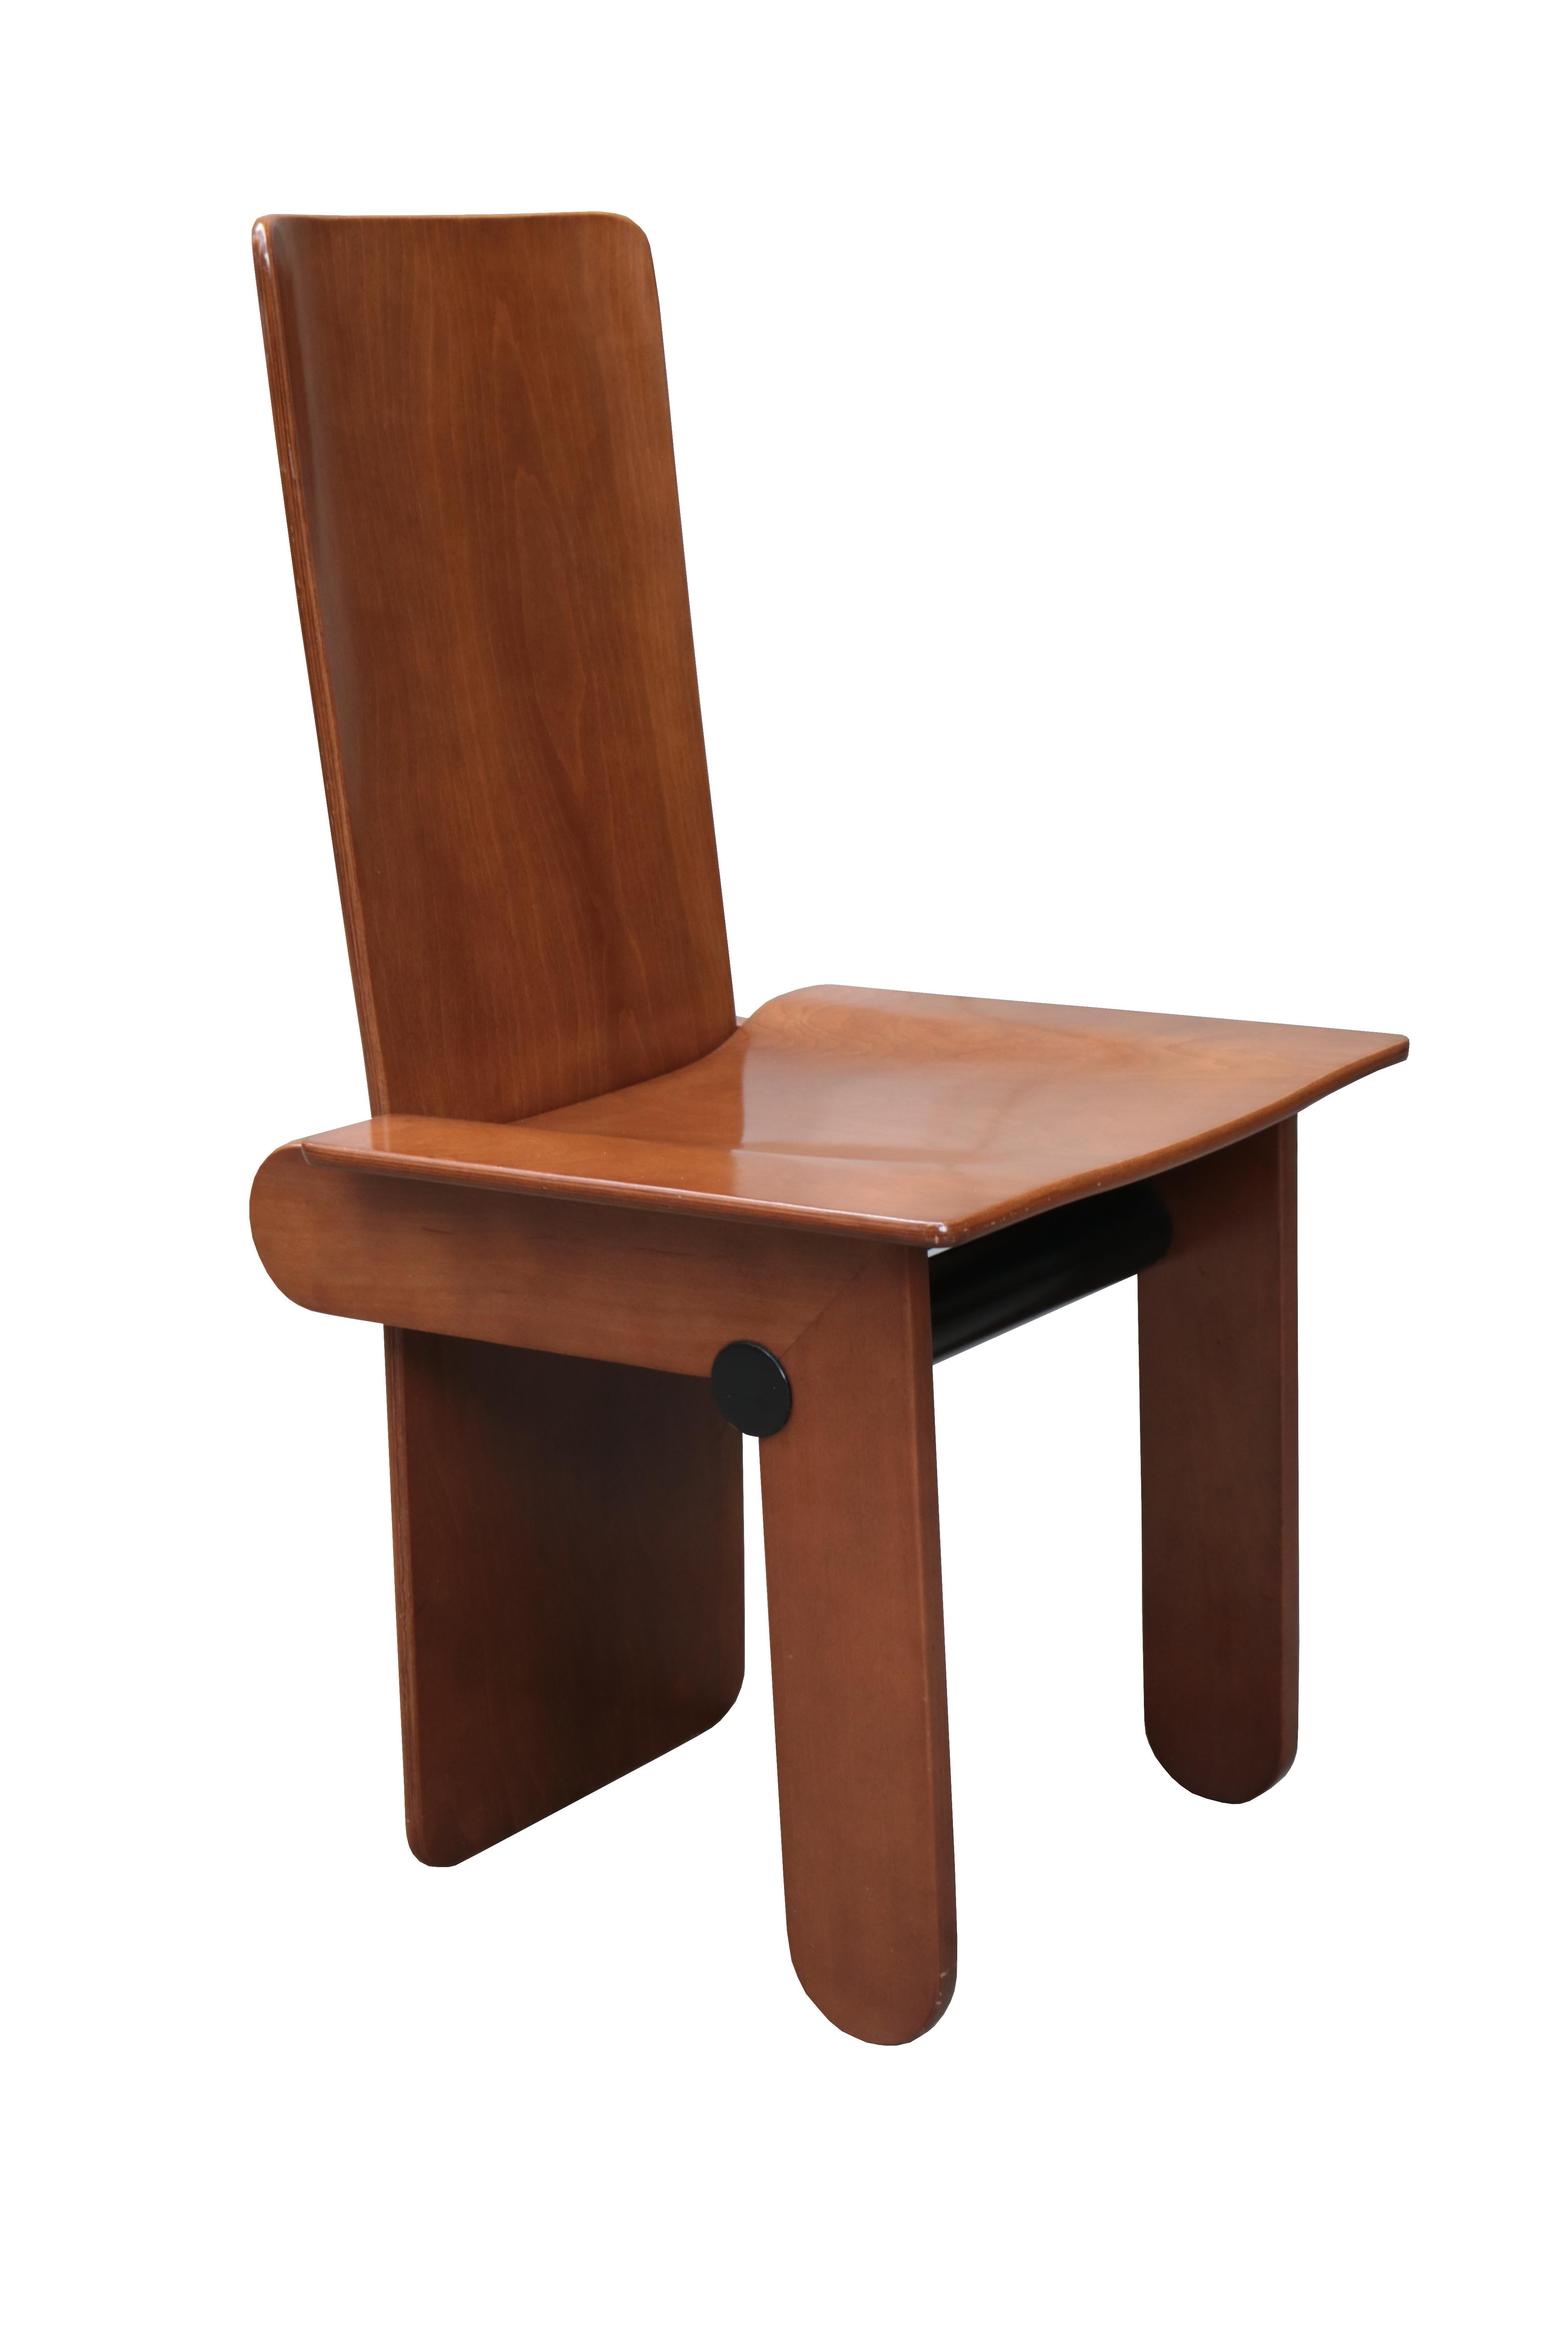 Ein Satz von sechs modernistischen Esszimmerstühlen, entworfen von Carlo Scarpa für Gavina. 
Gebeiztes Kiefernholz mit ebonisierten Details.